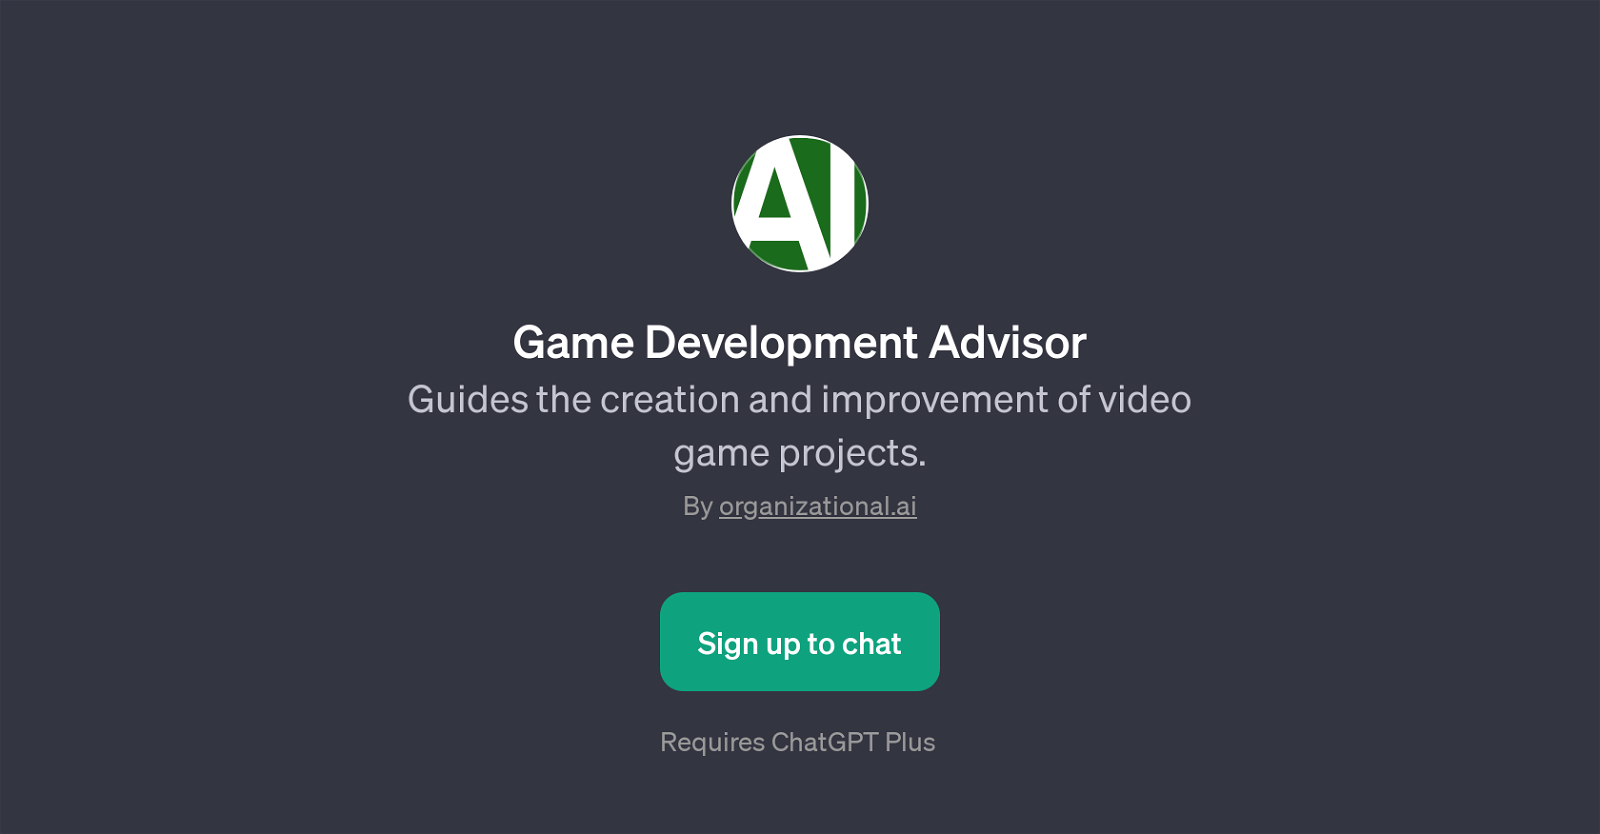 Game Development Advisor website